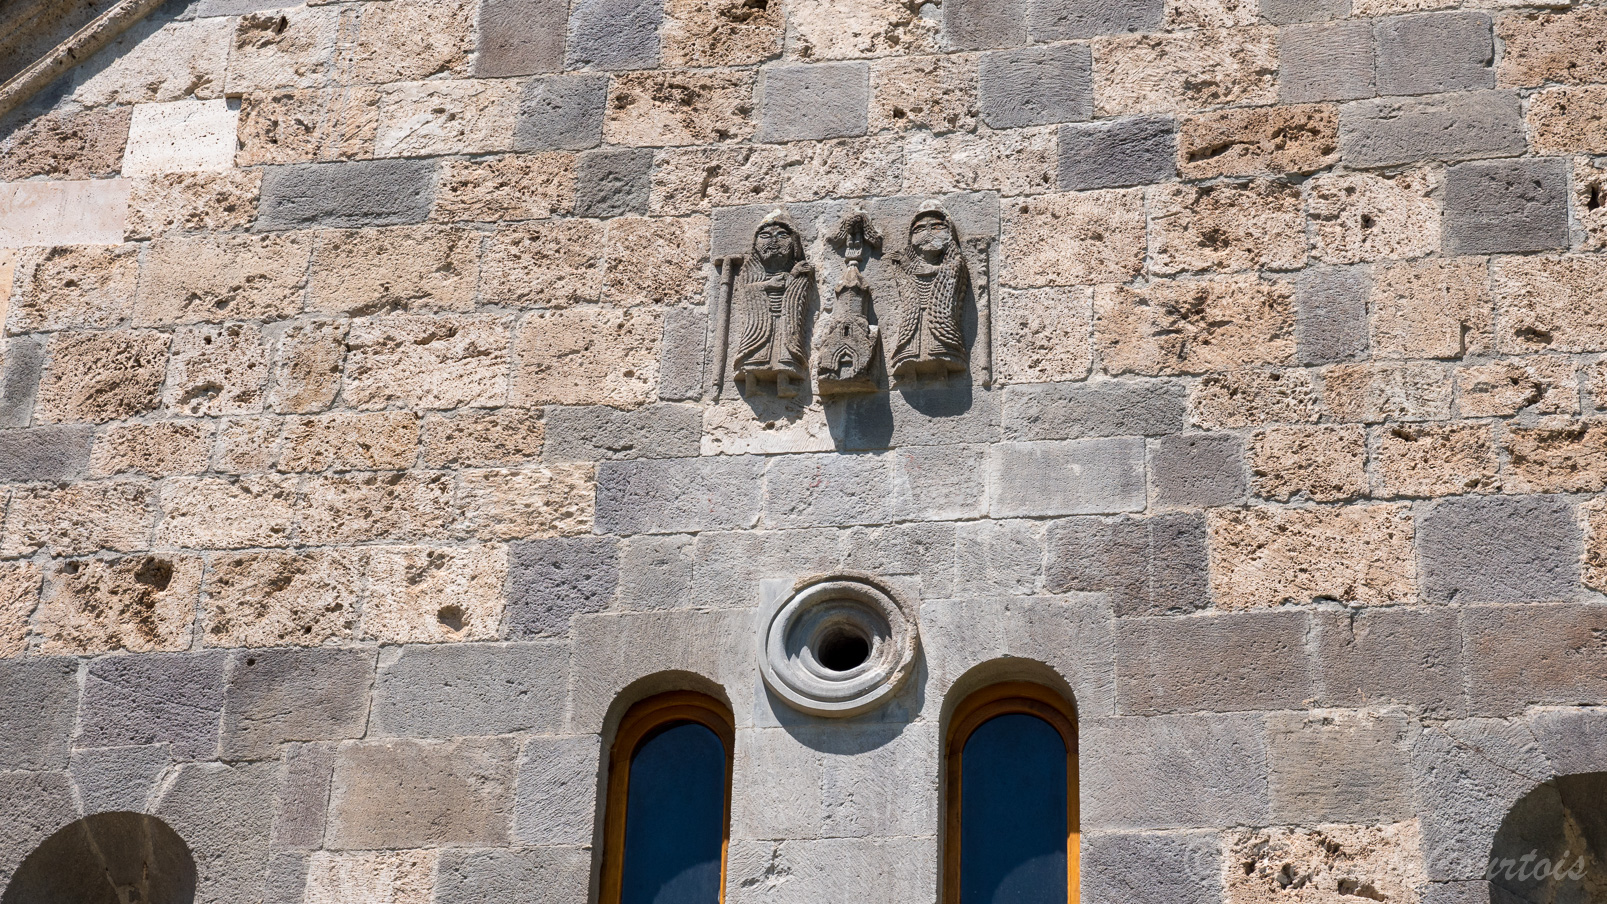 Monastère de Haghartsine. Les donateurs sur la façade de l’église.